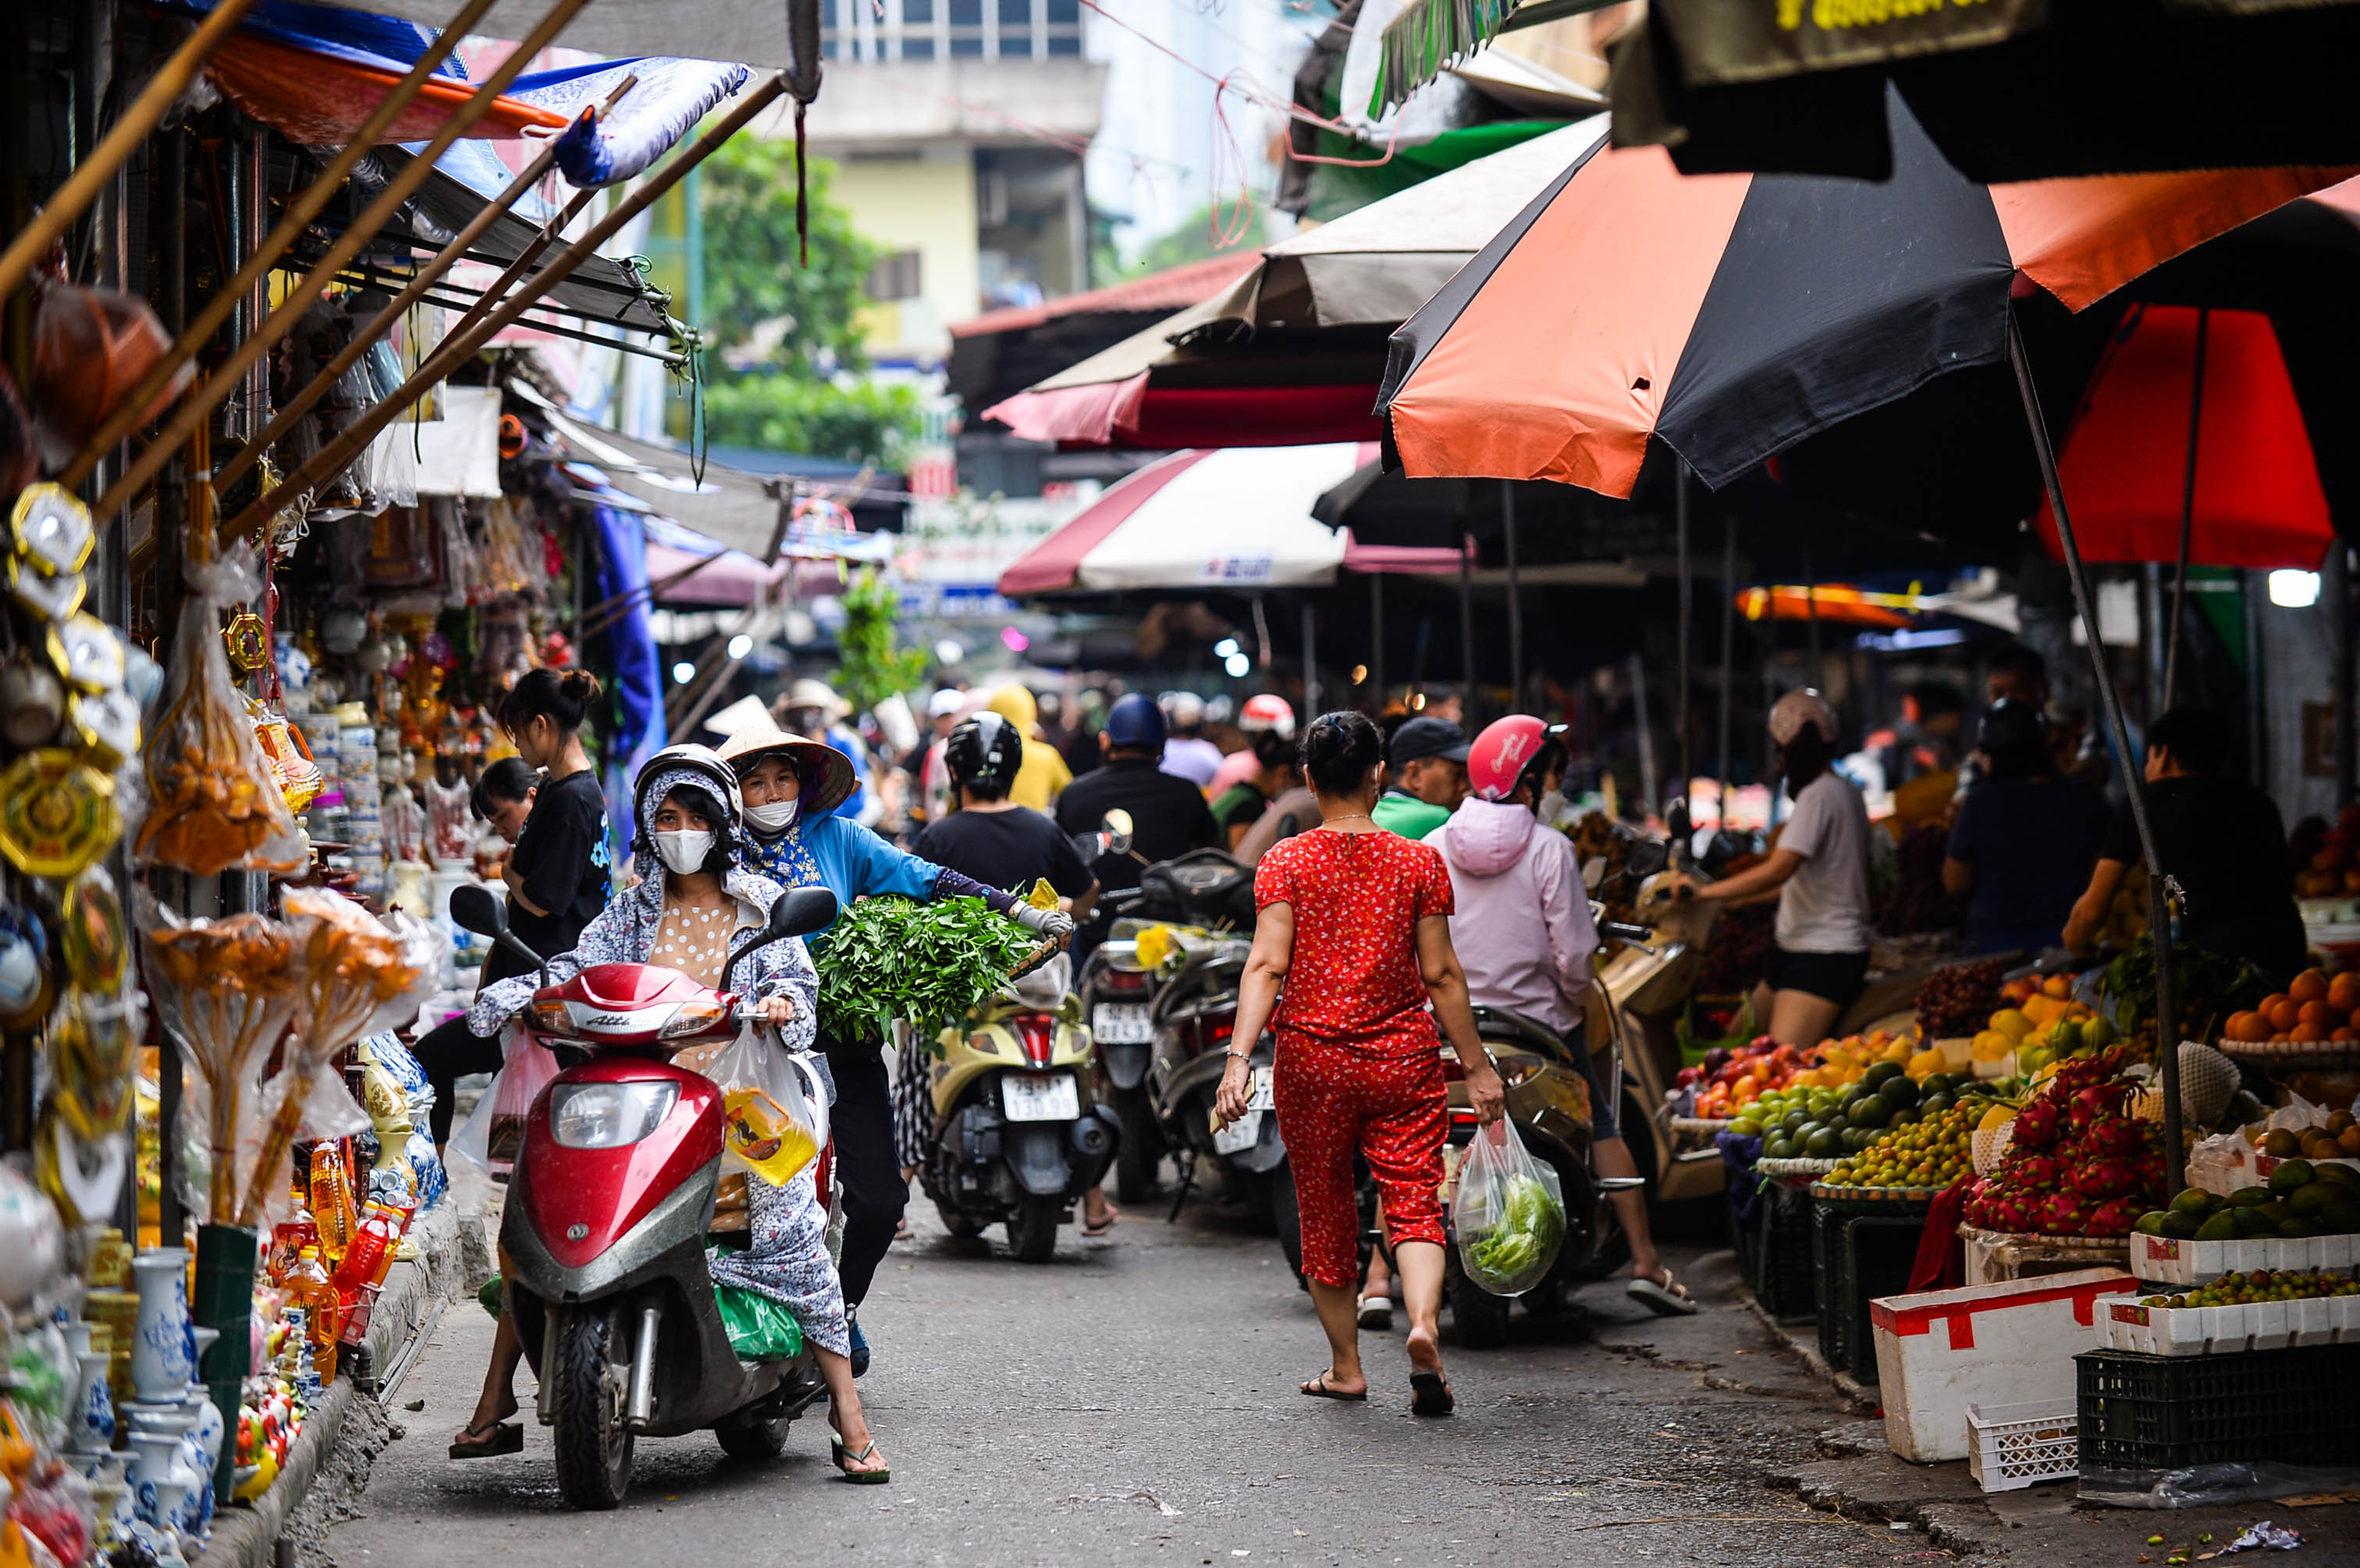 Sáng 1/7 Âm lịch, nhiều người ở Hà Nội đi mua đồ cúng ở các chợ lớn nhỏ nhân ngày đầu tháng 